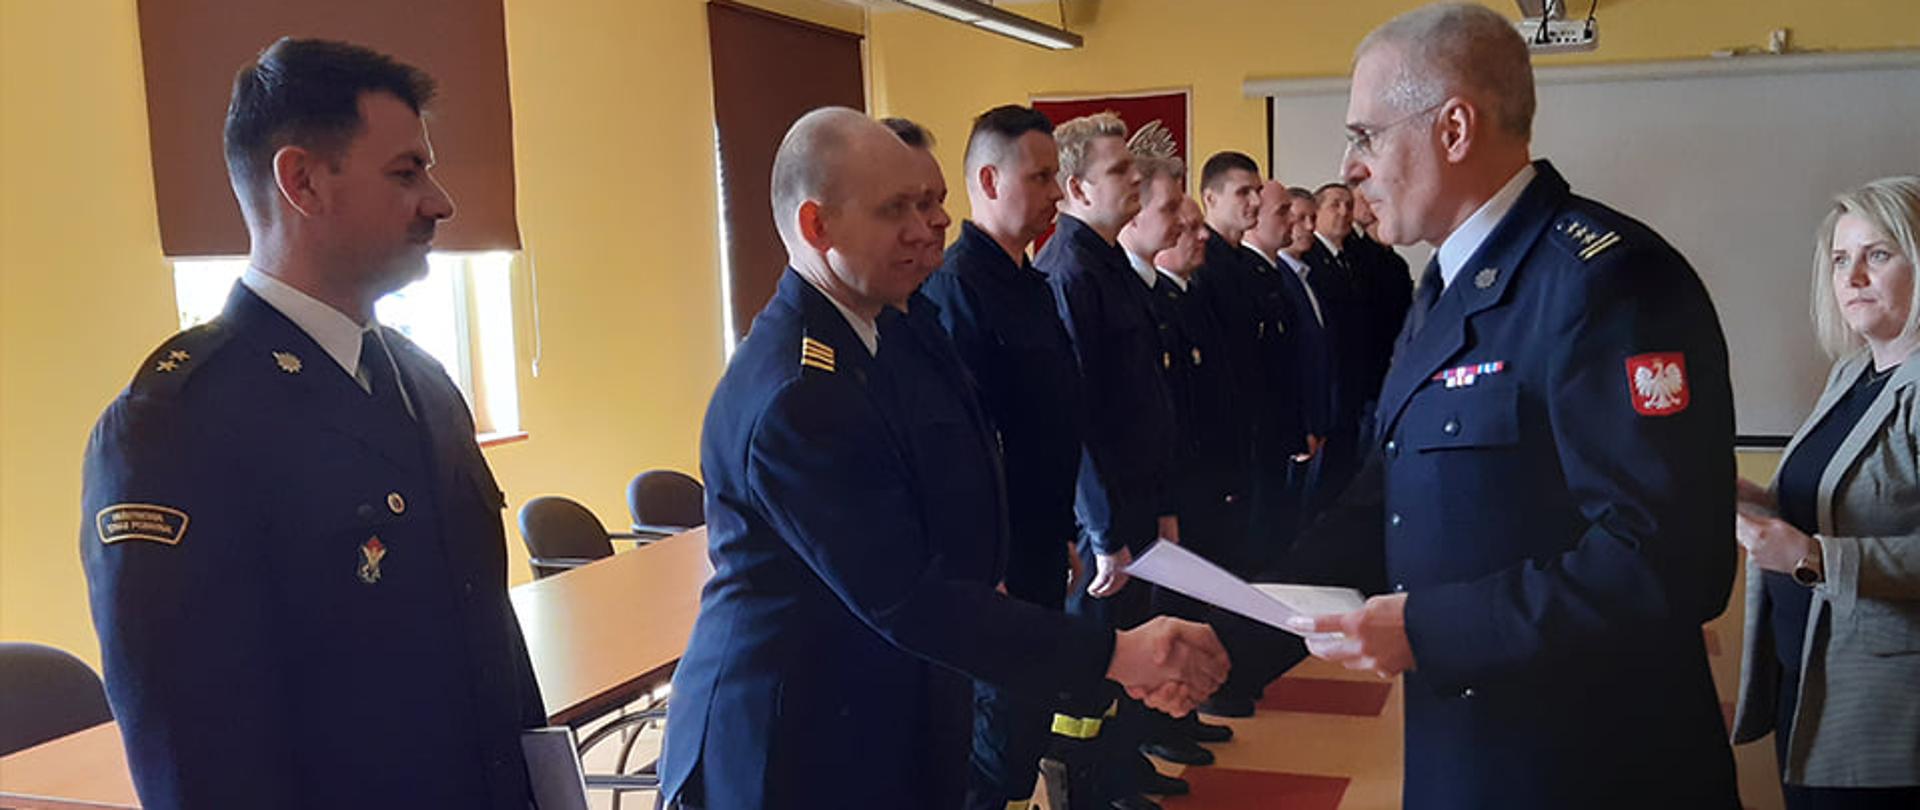 W Sali konferencyjnej w Komendzie Miejskiej Państwowej Straży Pożarnej w Wałbrzychu strażacy ubrani w ciemne mundury wyjściowe odbierają z rąk Komendanta nagrody i podziękowania za służbę